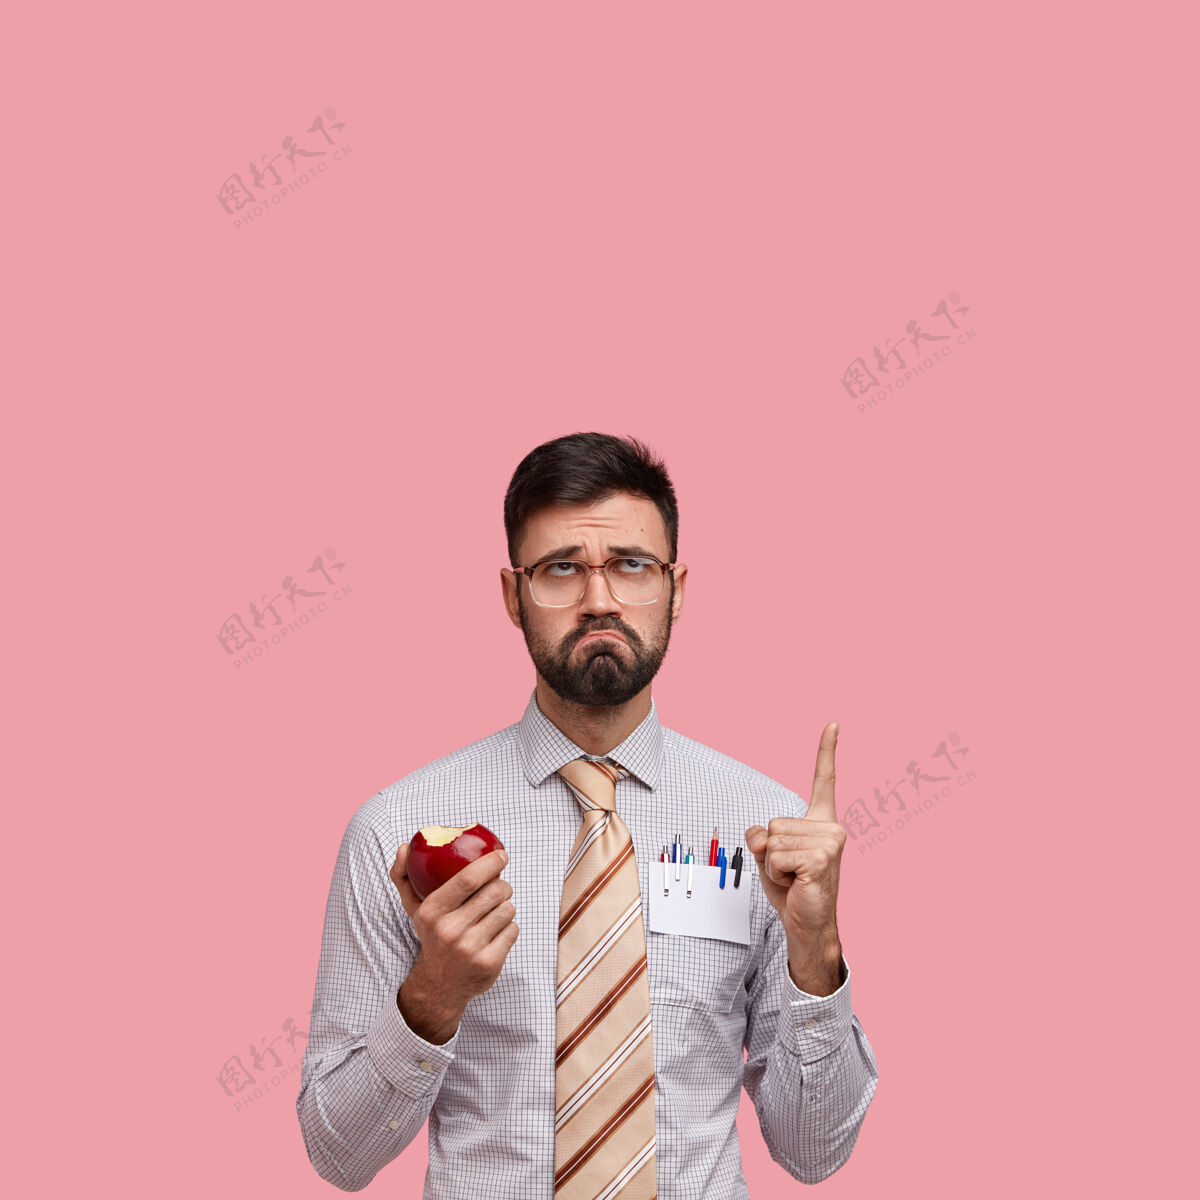 皱眉不开心男人的垂直镜头 留着深色的胡茬 表情消极 吃着多汁的苹果 穿着正式的衣服 食指朝上指着个性企业家聪明